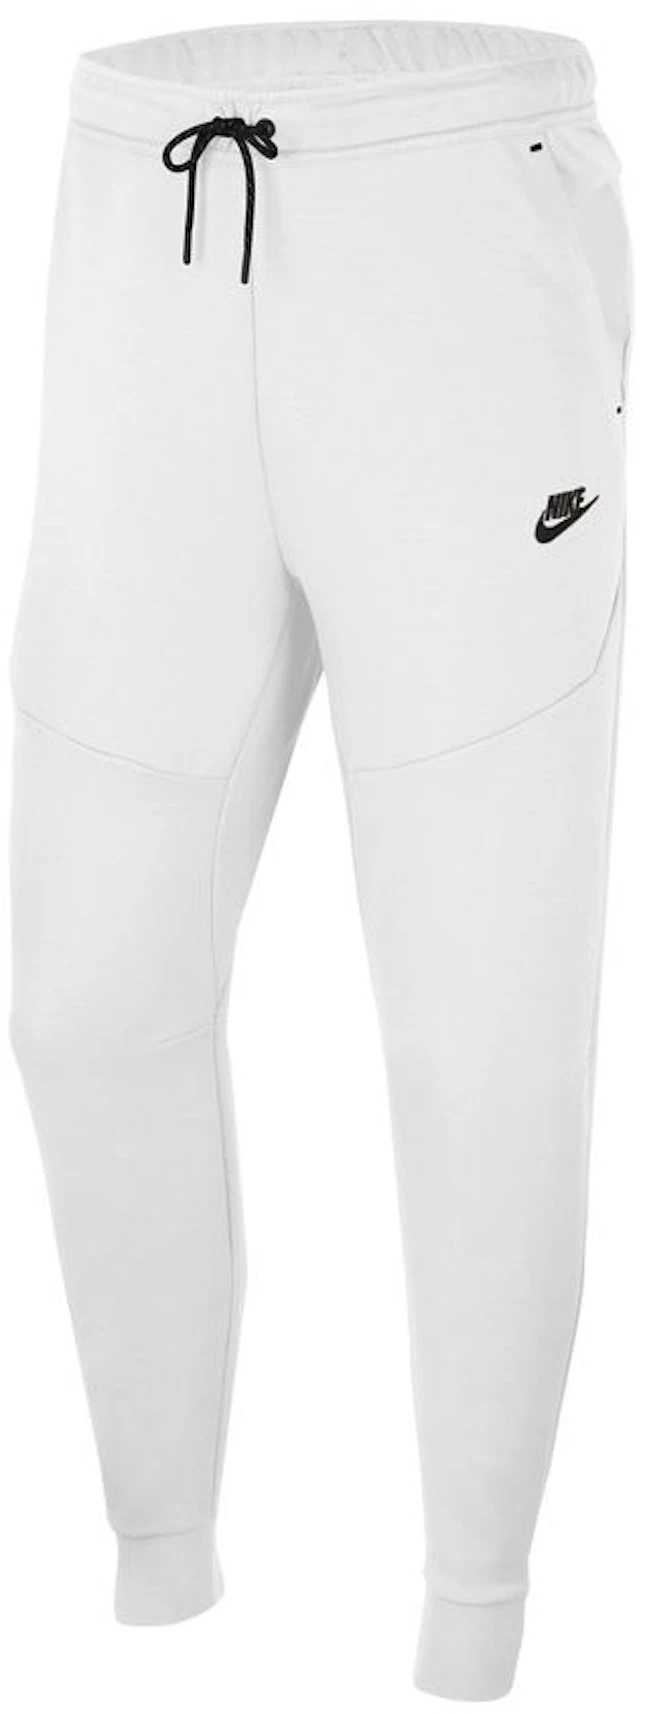 Nike Tech Fleece White/Black - ES